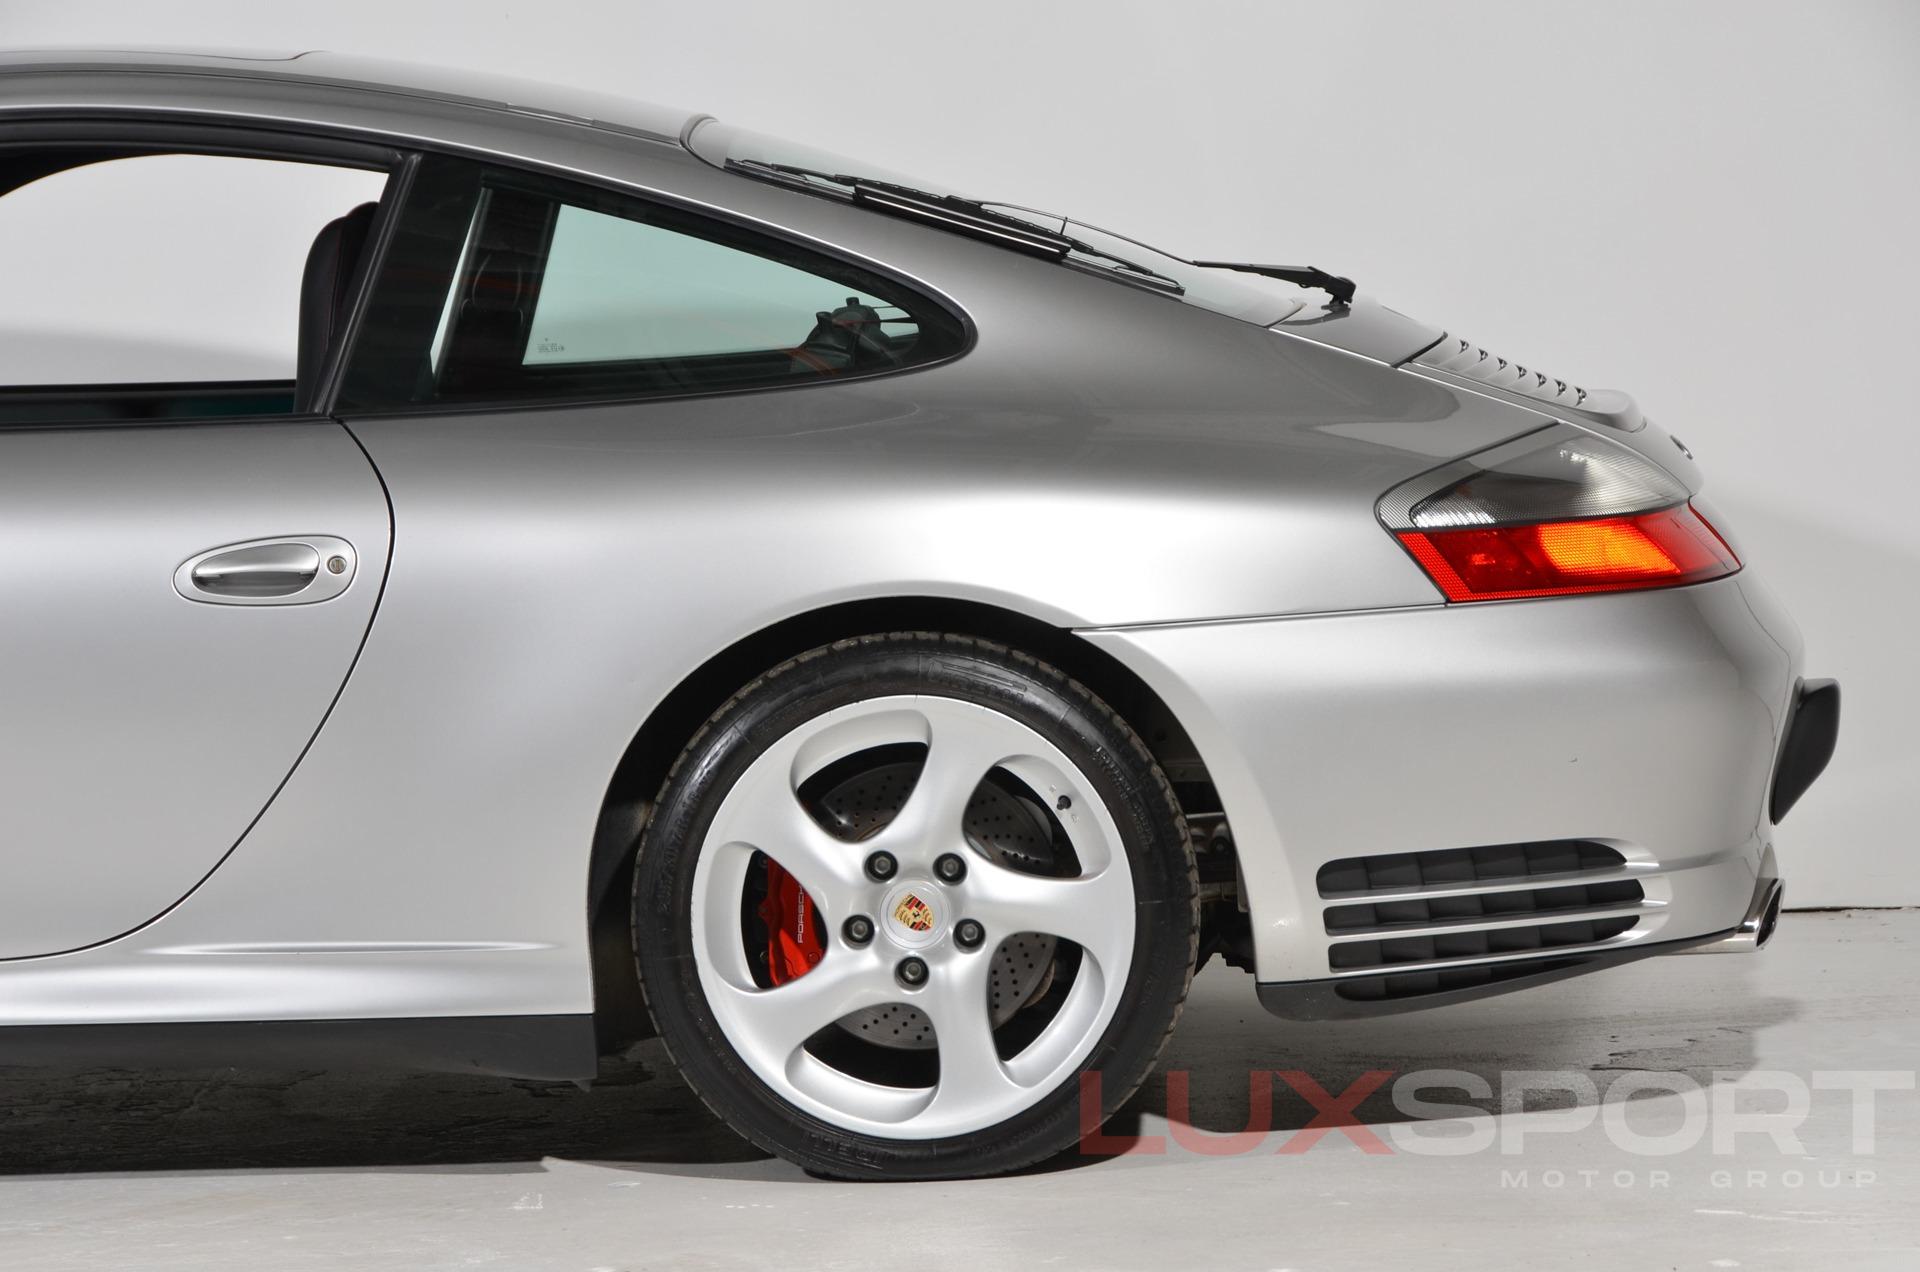 Used 2003 Porsche 911 Carrera 4S | Plainview, NY